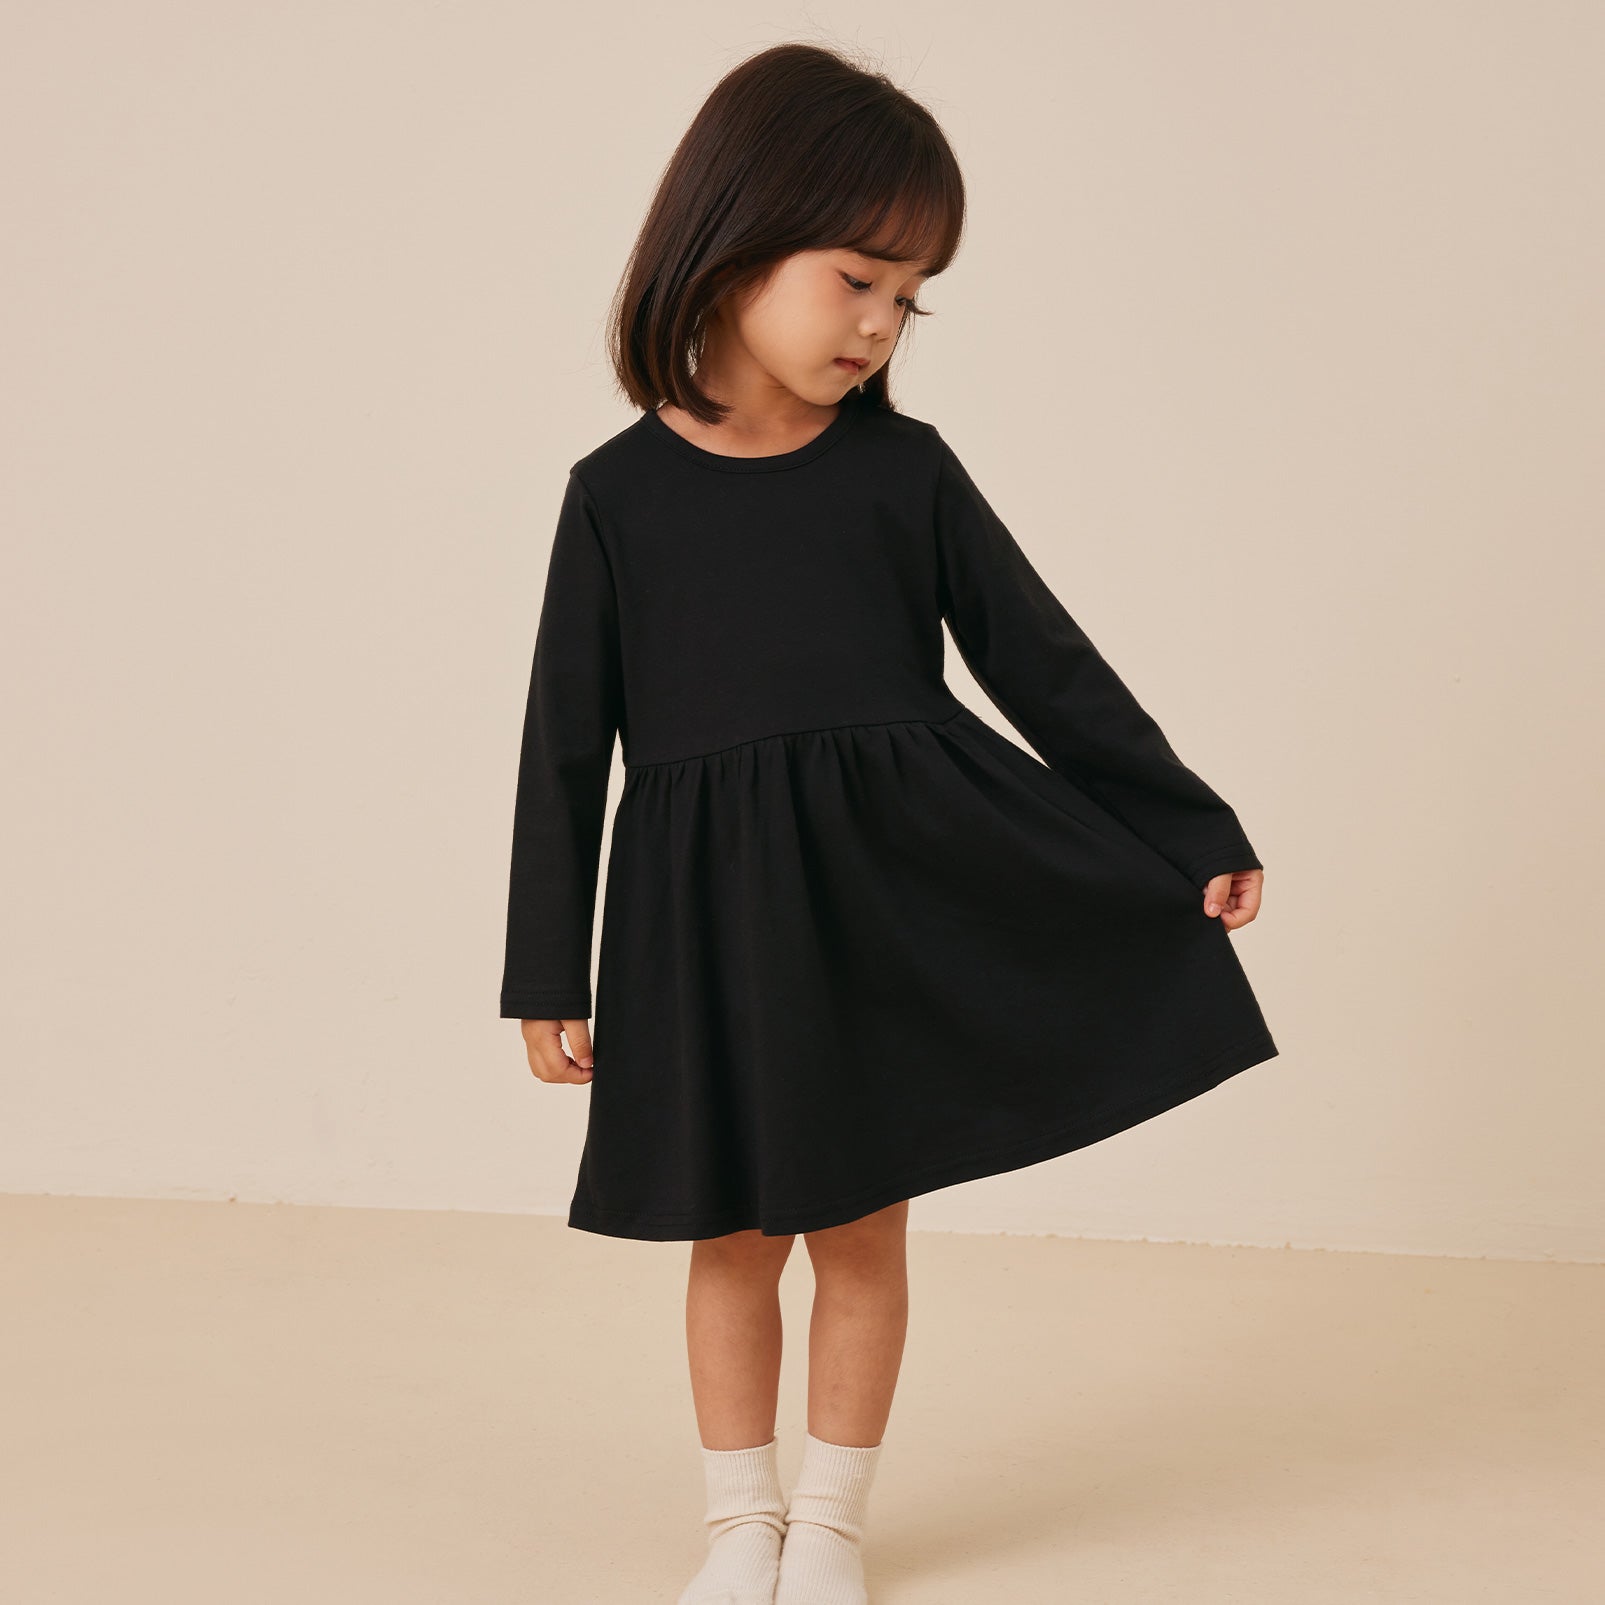 pureborn Toddler Girls Dress Long Sleeve Swing Dress Cotton Playwear Dress Casual A-Line Dresses for Little Girl